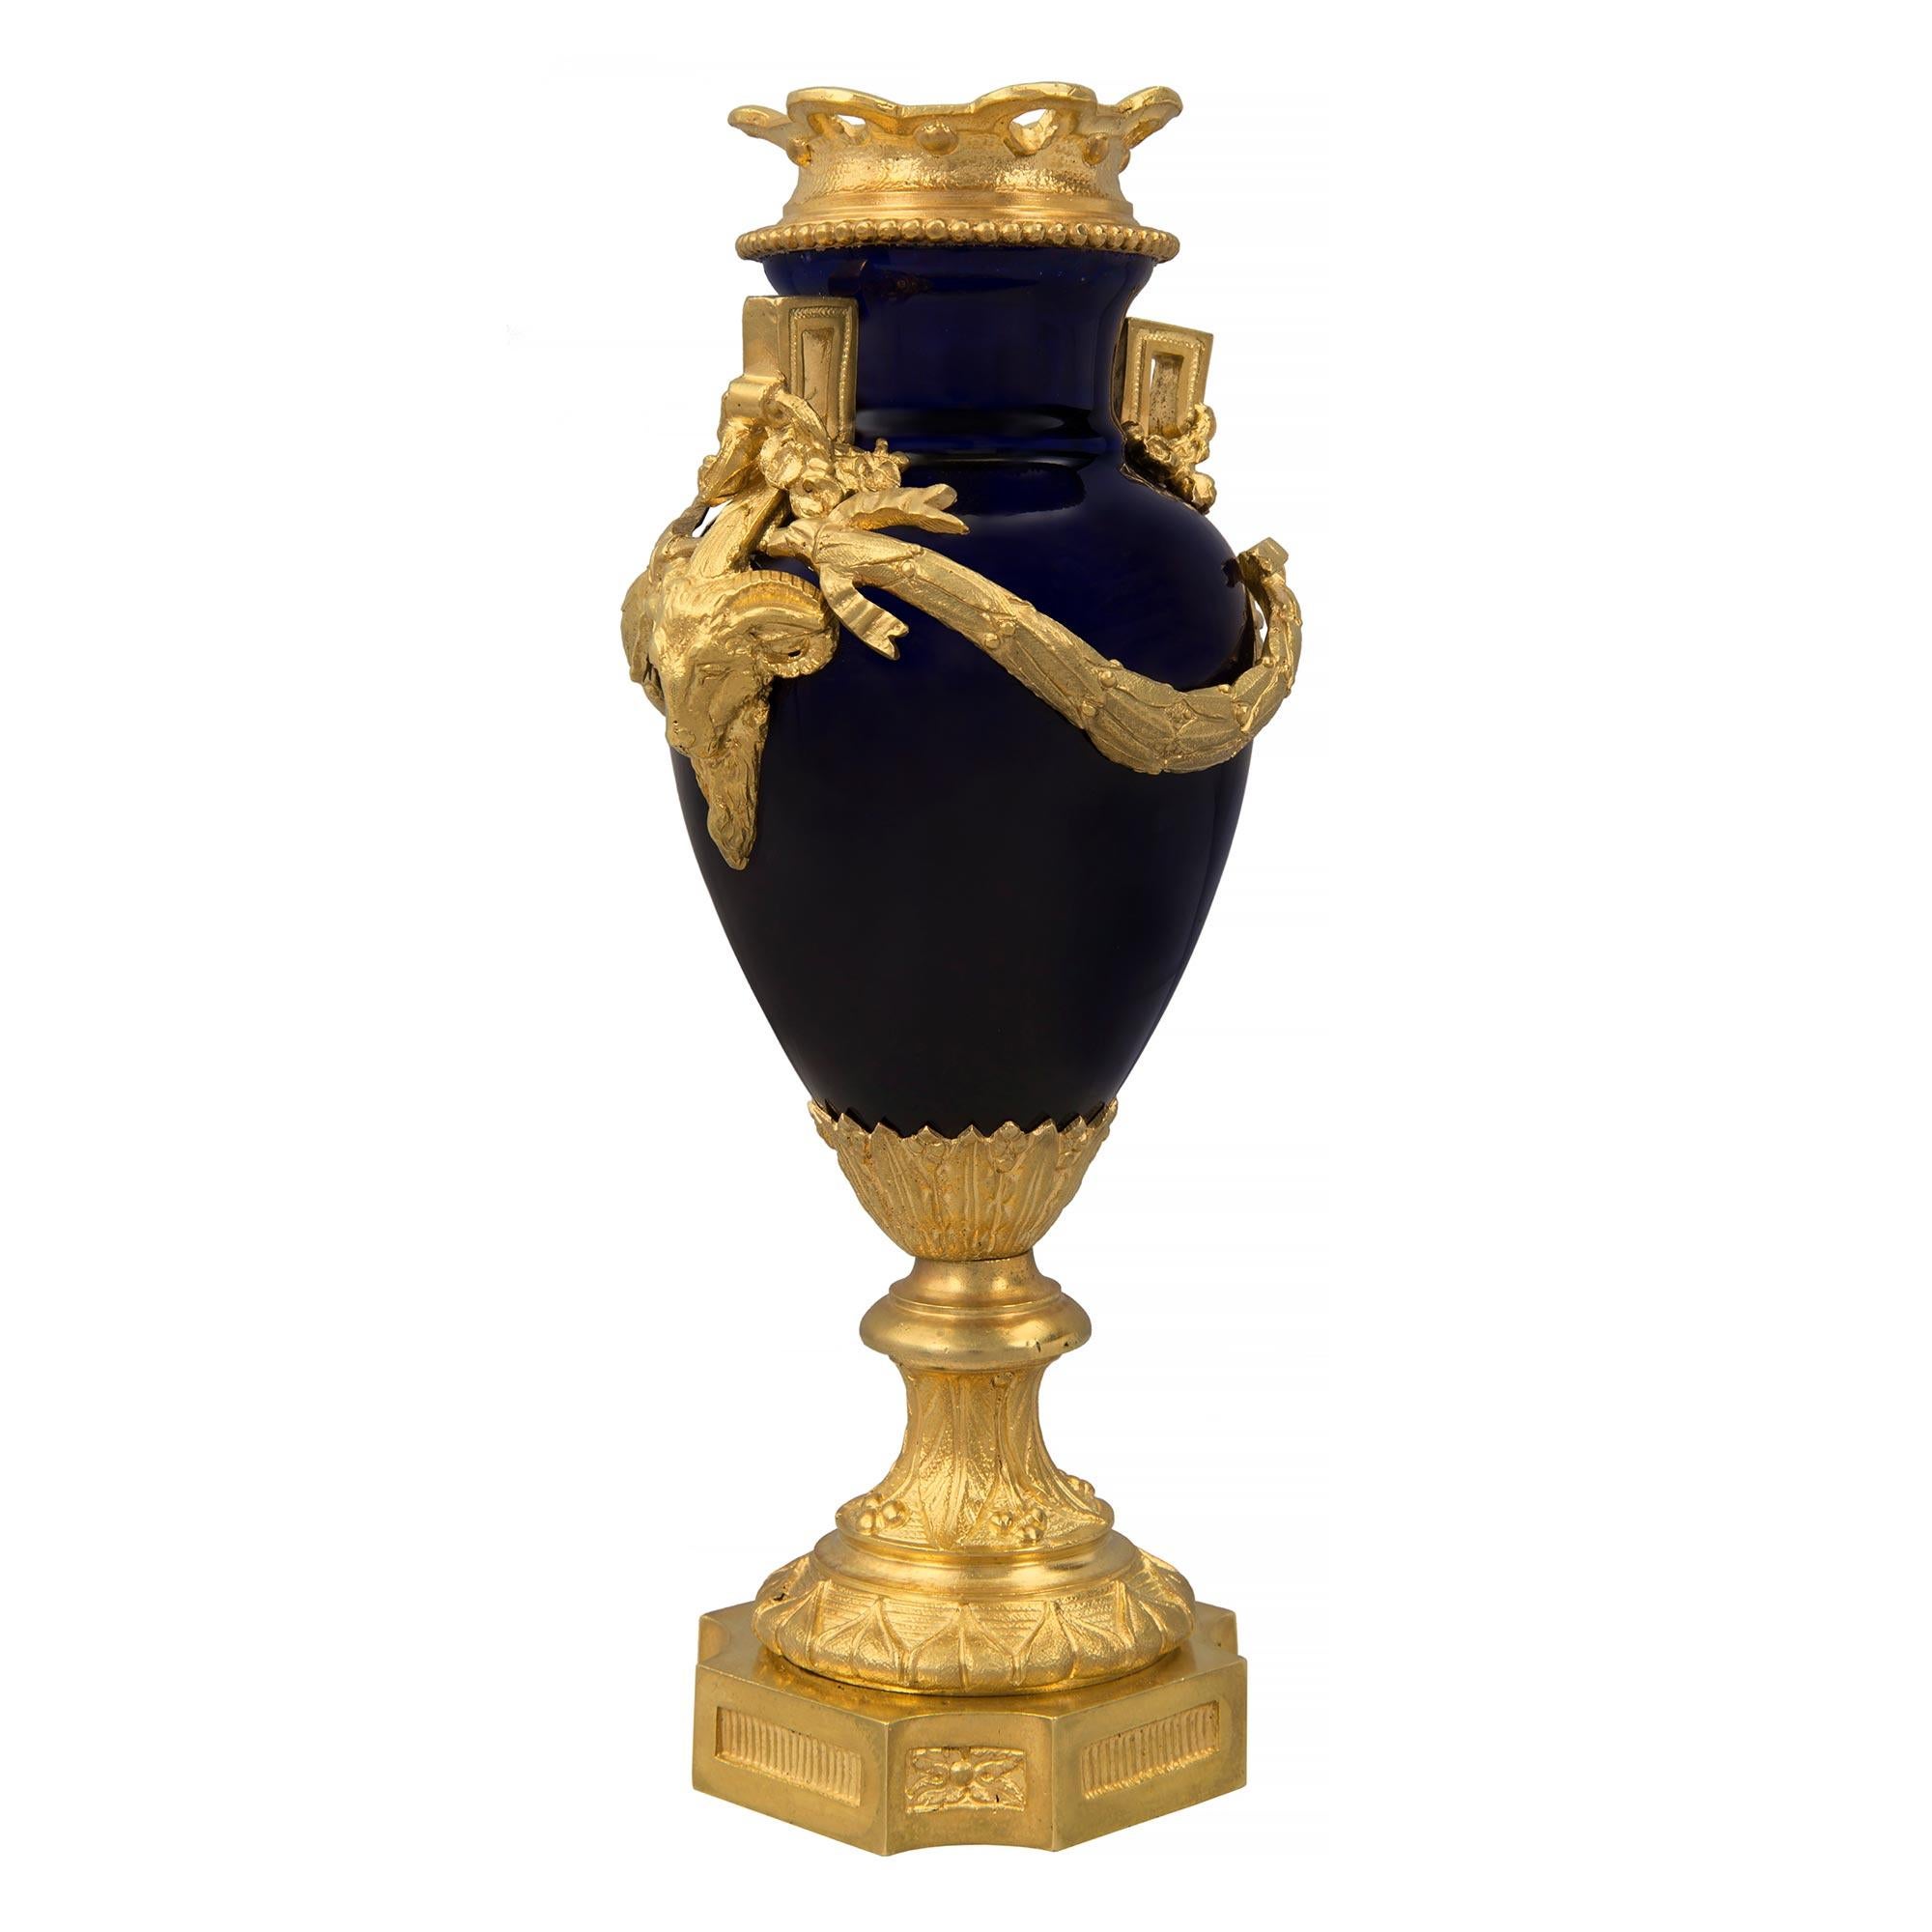 Remarquable vase de grande qualité en porcelaine bleu cobalt et bronze doré de style Louis XVI du 19e siècle, probablement de Sèvres. Le vase est surélevé par une fine base carrée en bronze doré avec des coins concaves, de belles plaques cannelées